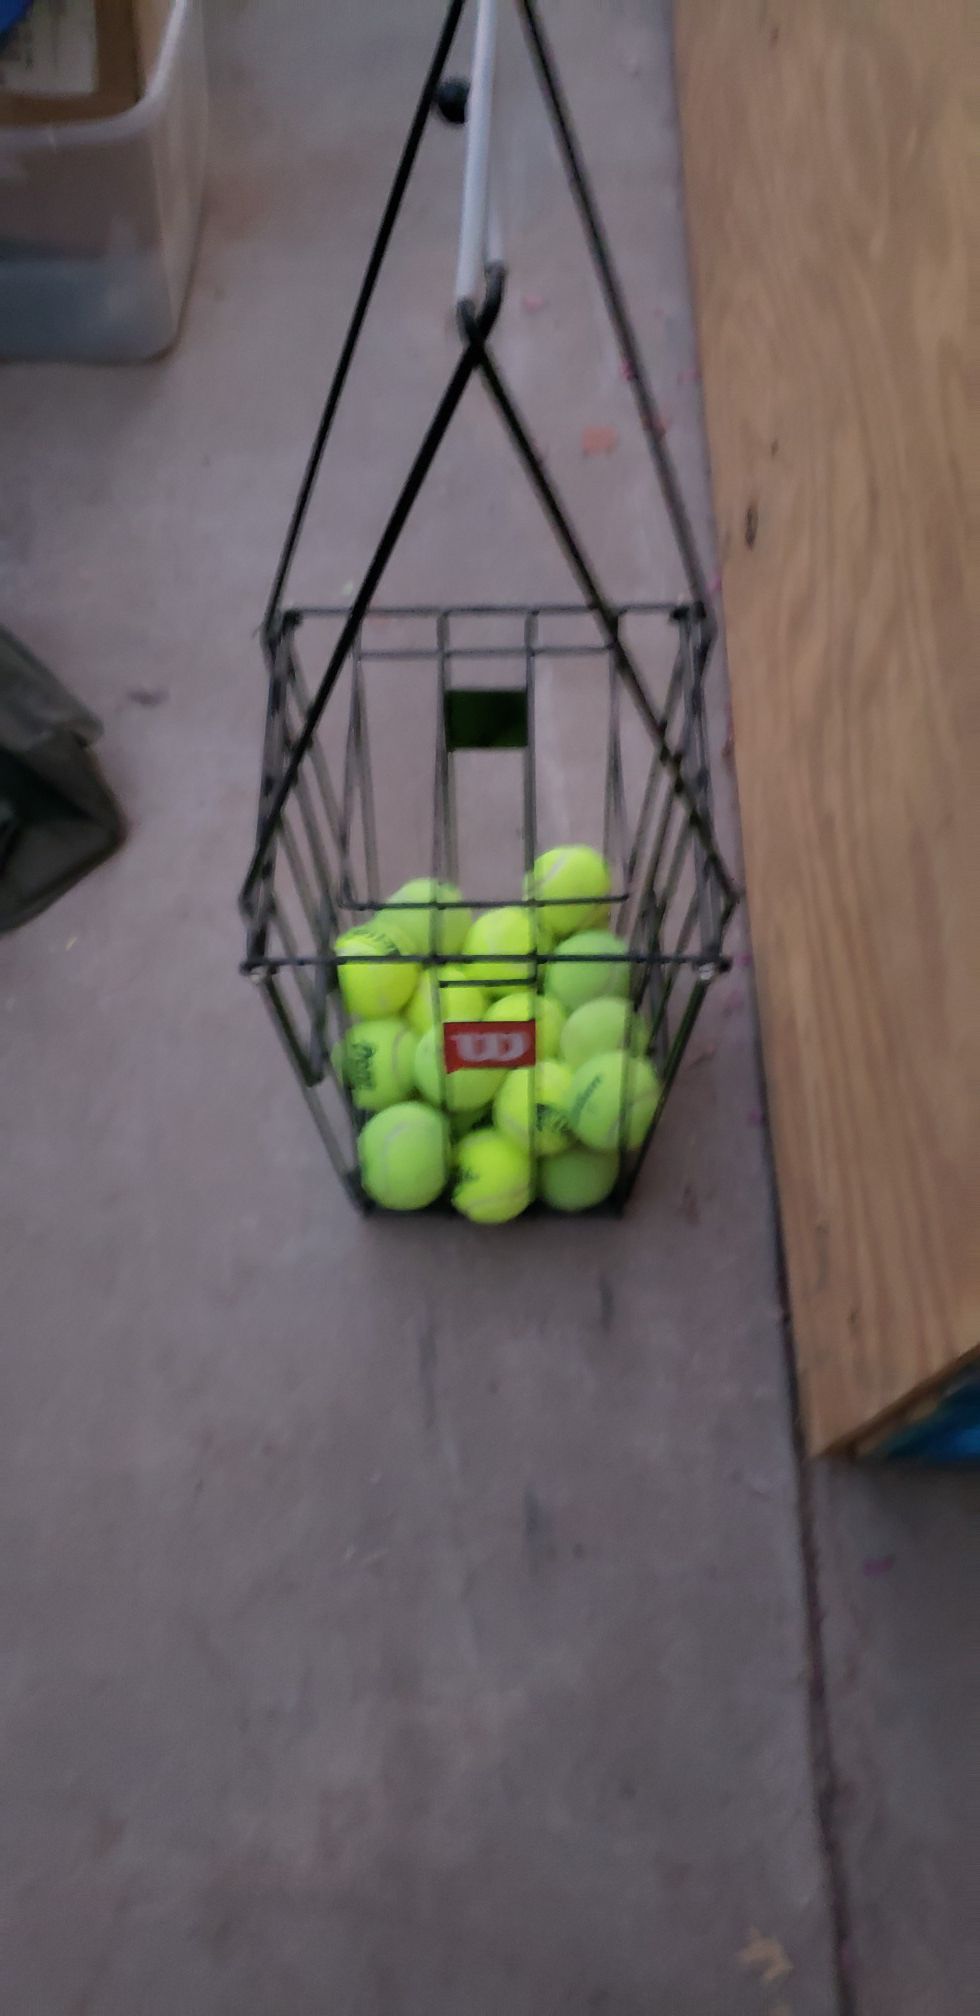 Wilson tennis ball hopper